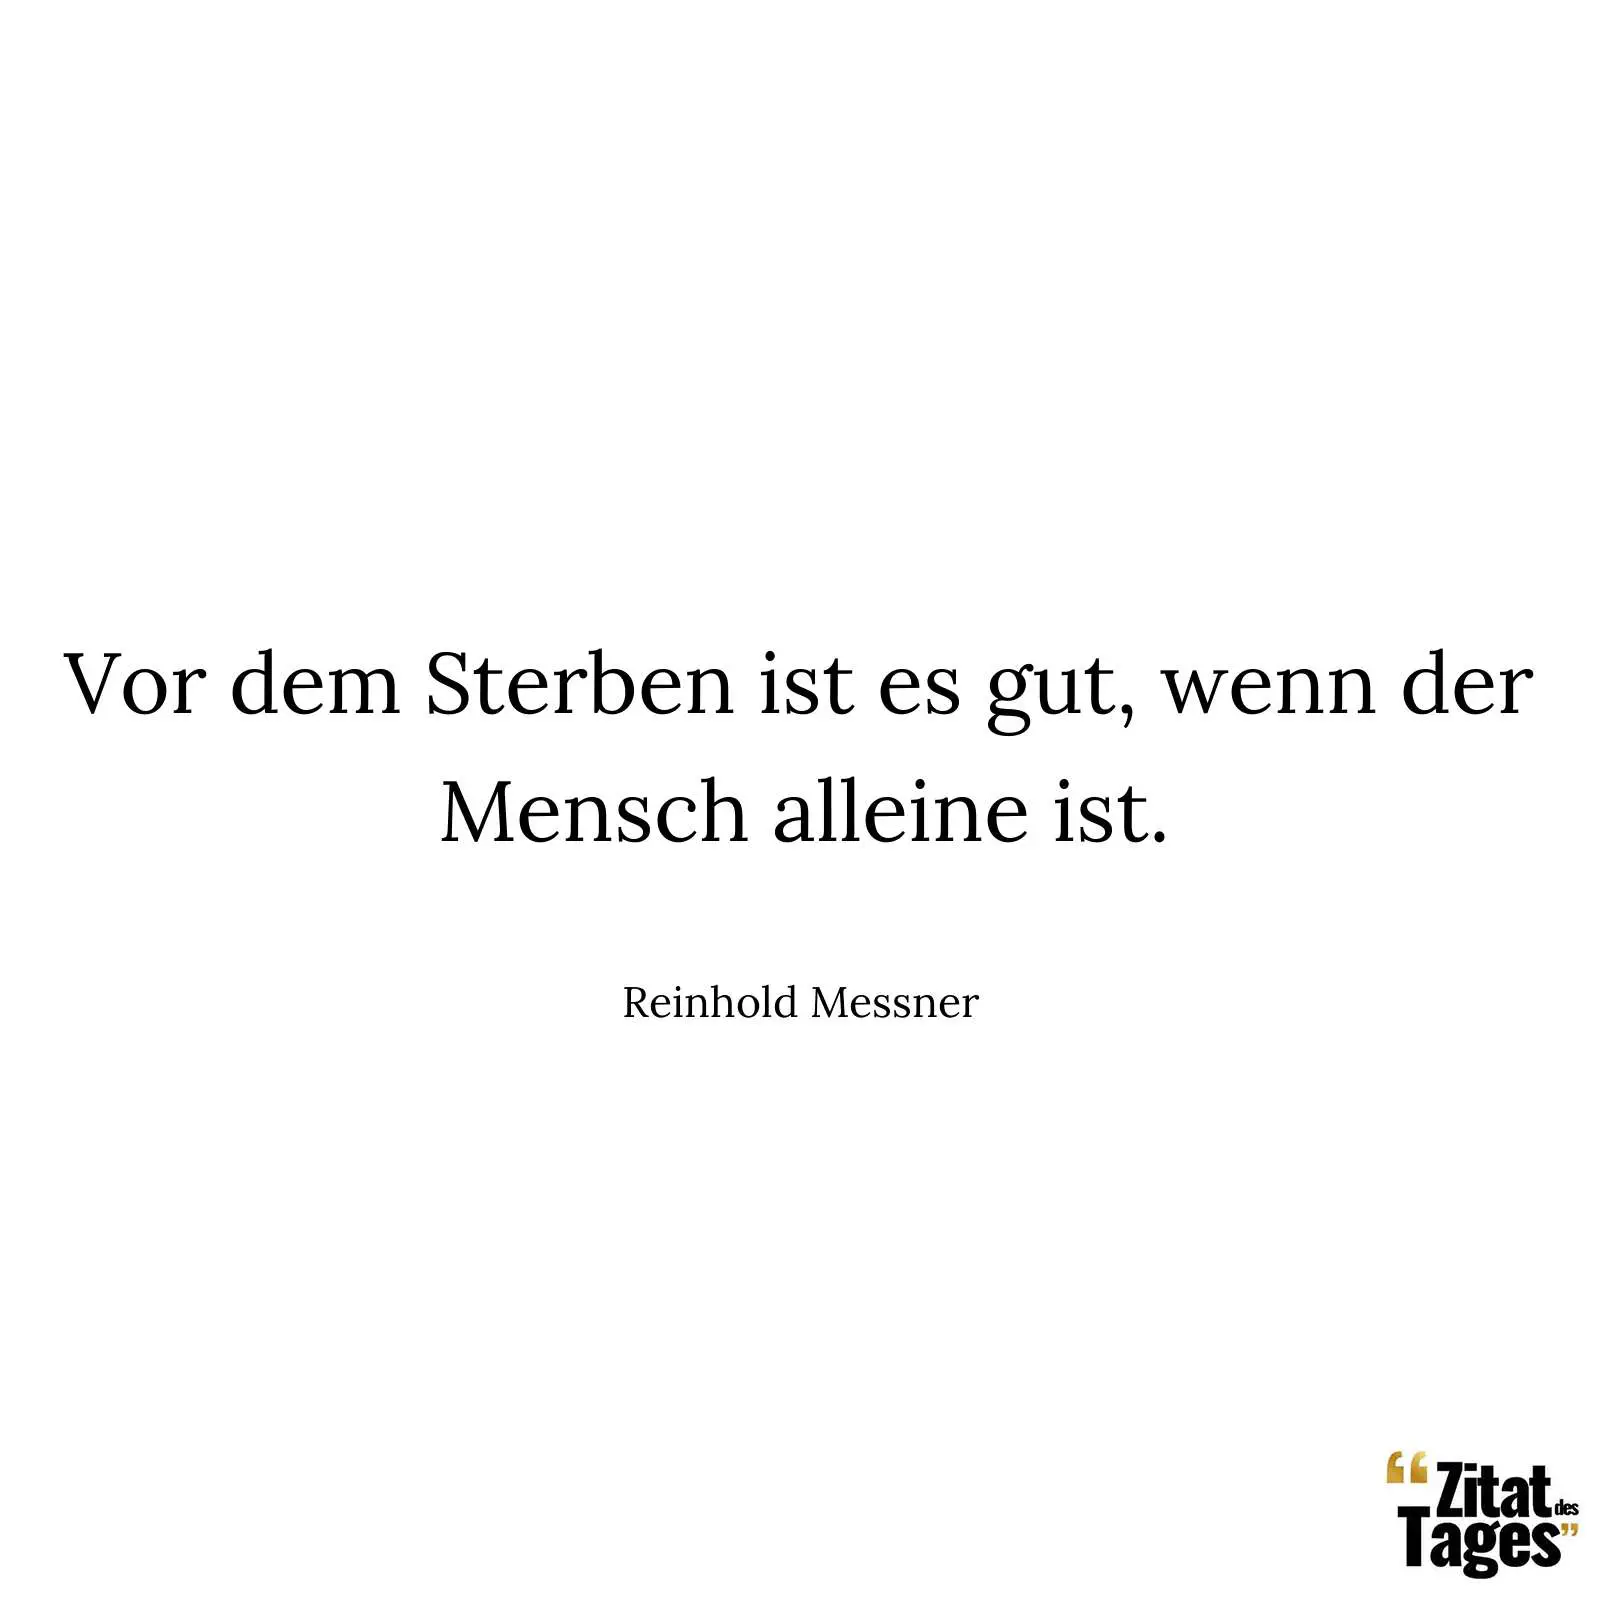 Vor dem Sterben ist es gut, wenn der Mensch alleine ist. - Reinhold Messner